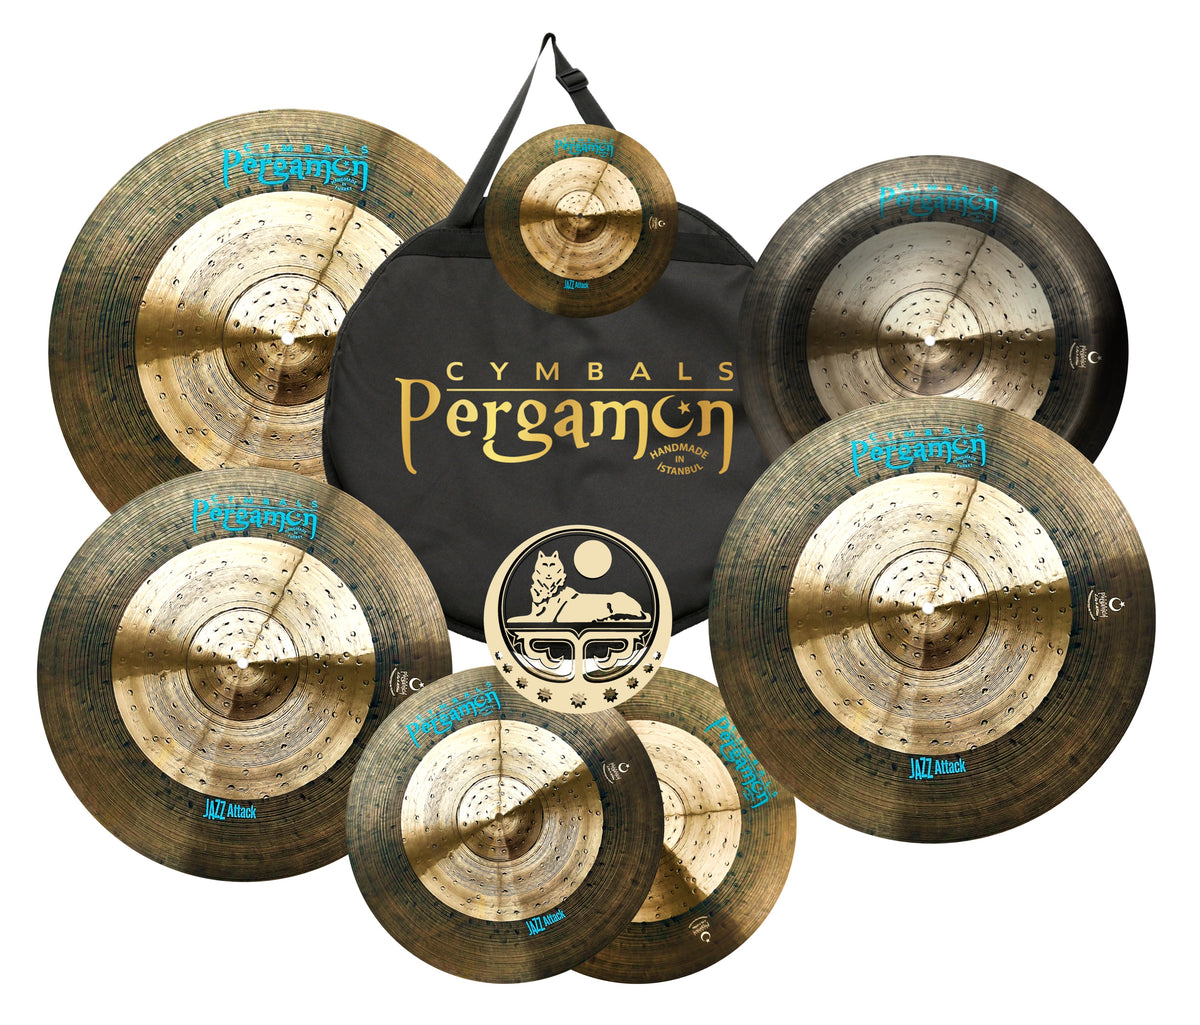 Pergamon Cymbals Jazz Attack Series – Sounds Anatolian